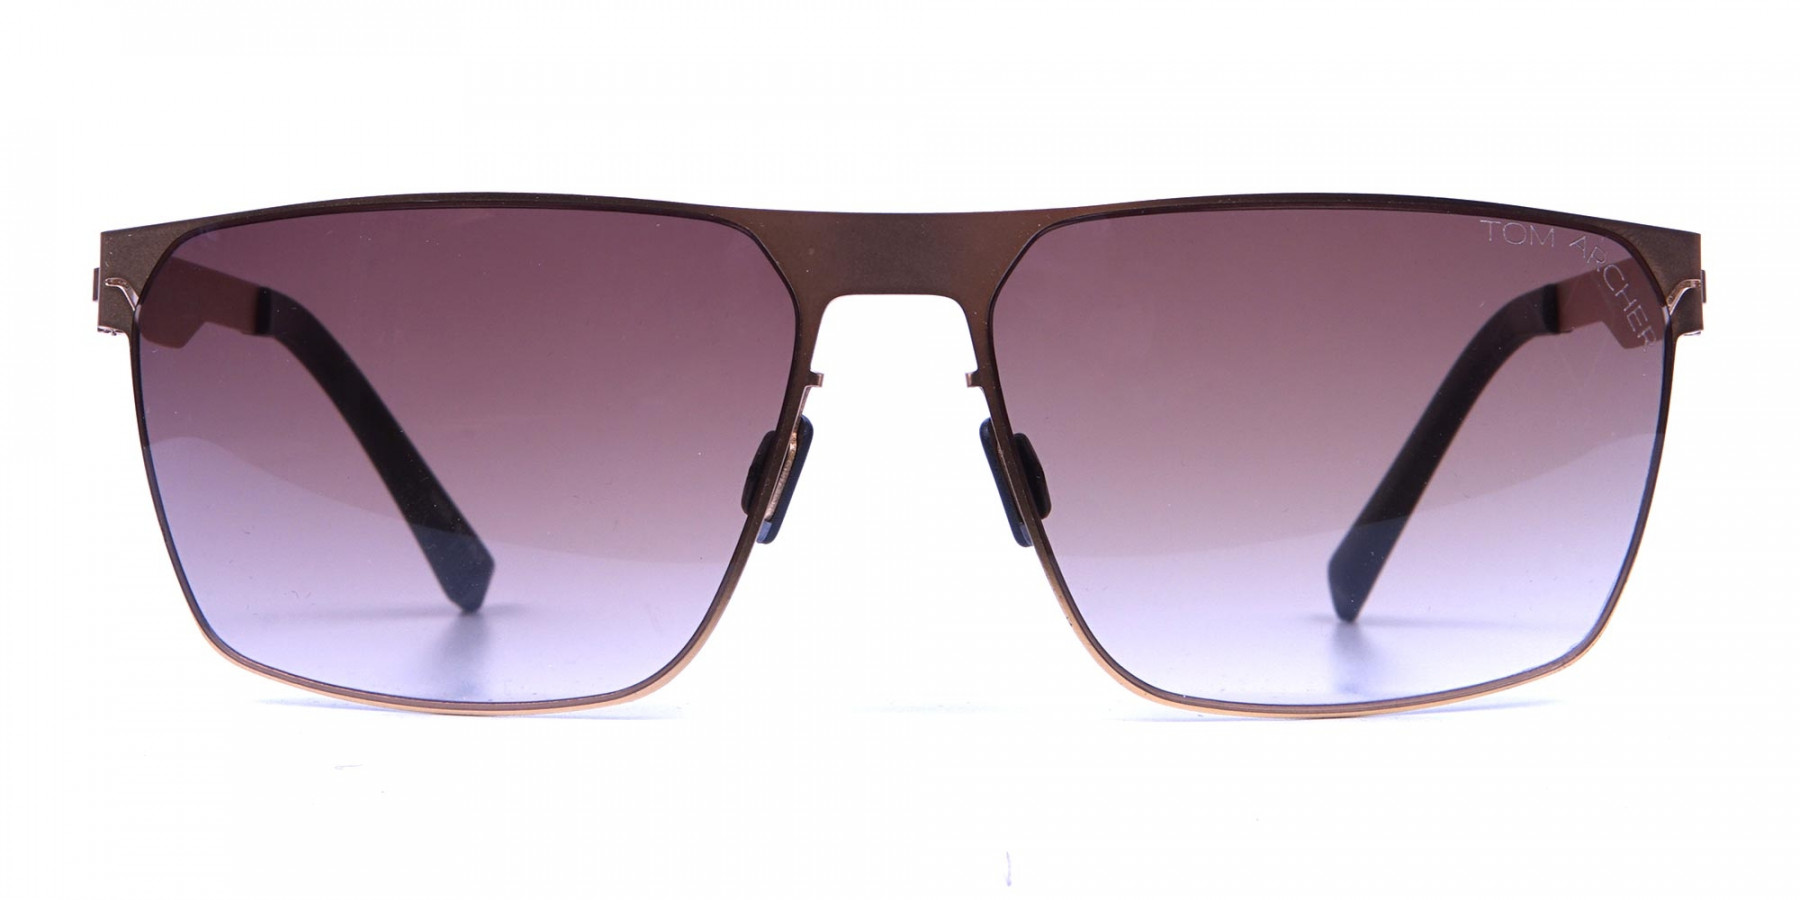 Gold Framed Rectangular Shaped Sunglasses